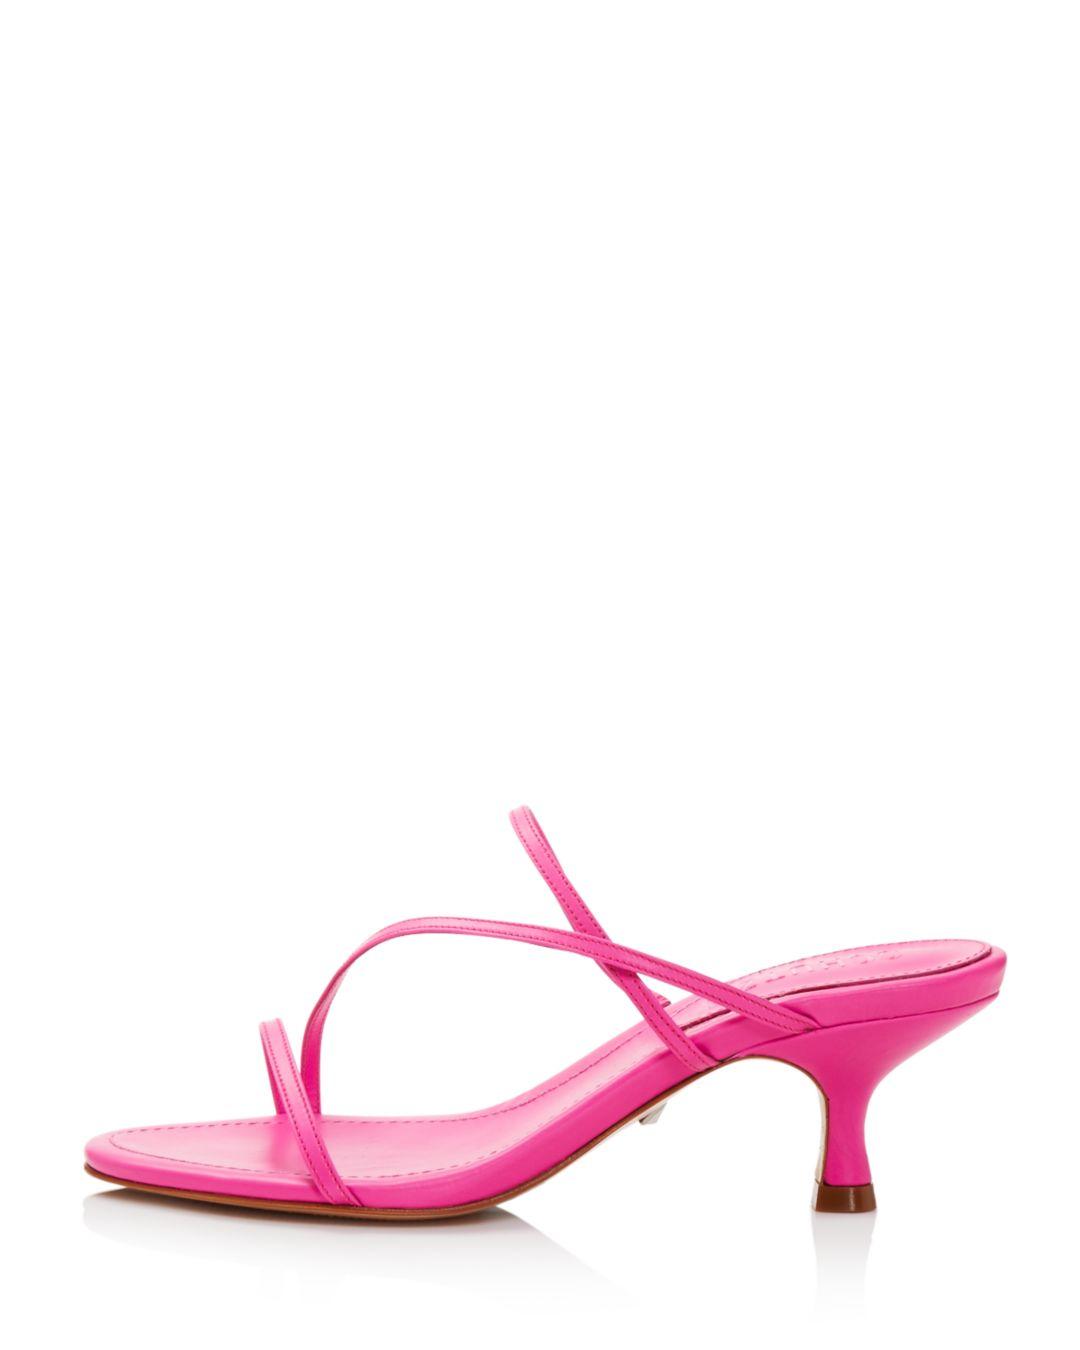 Schutz Women's Evenise Kitten Heel Sandals in Neon Pink (Pink) | Lyst